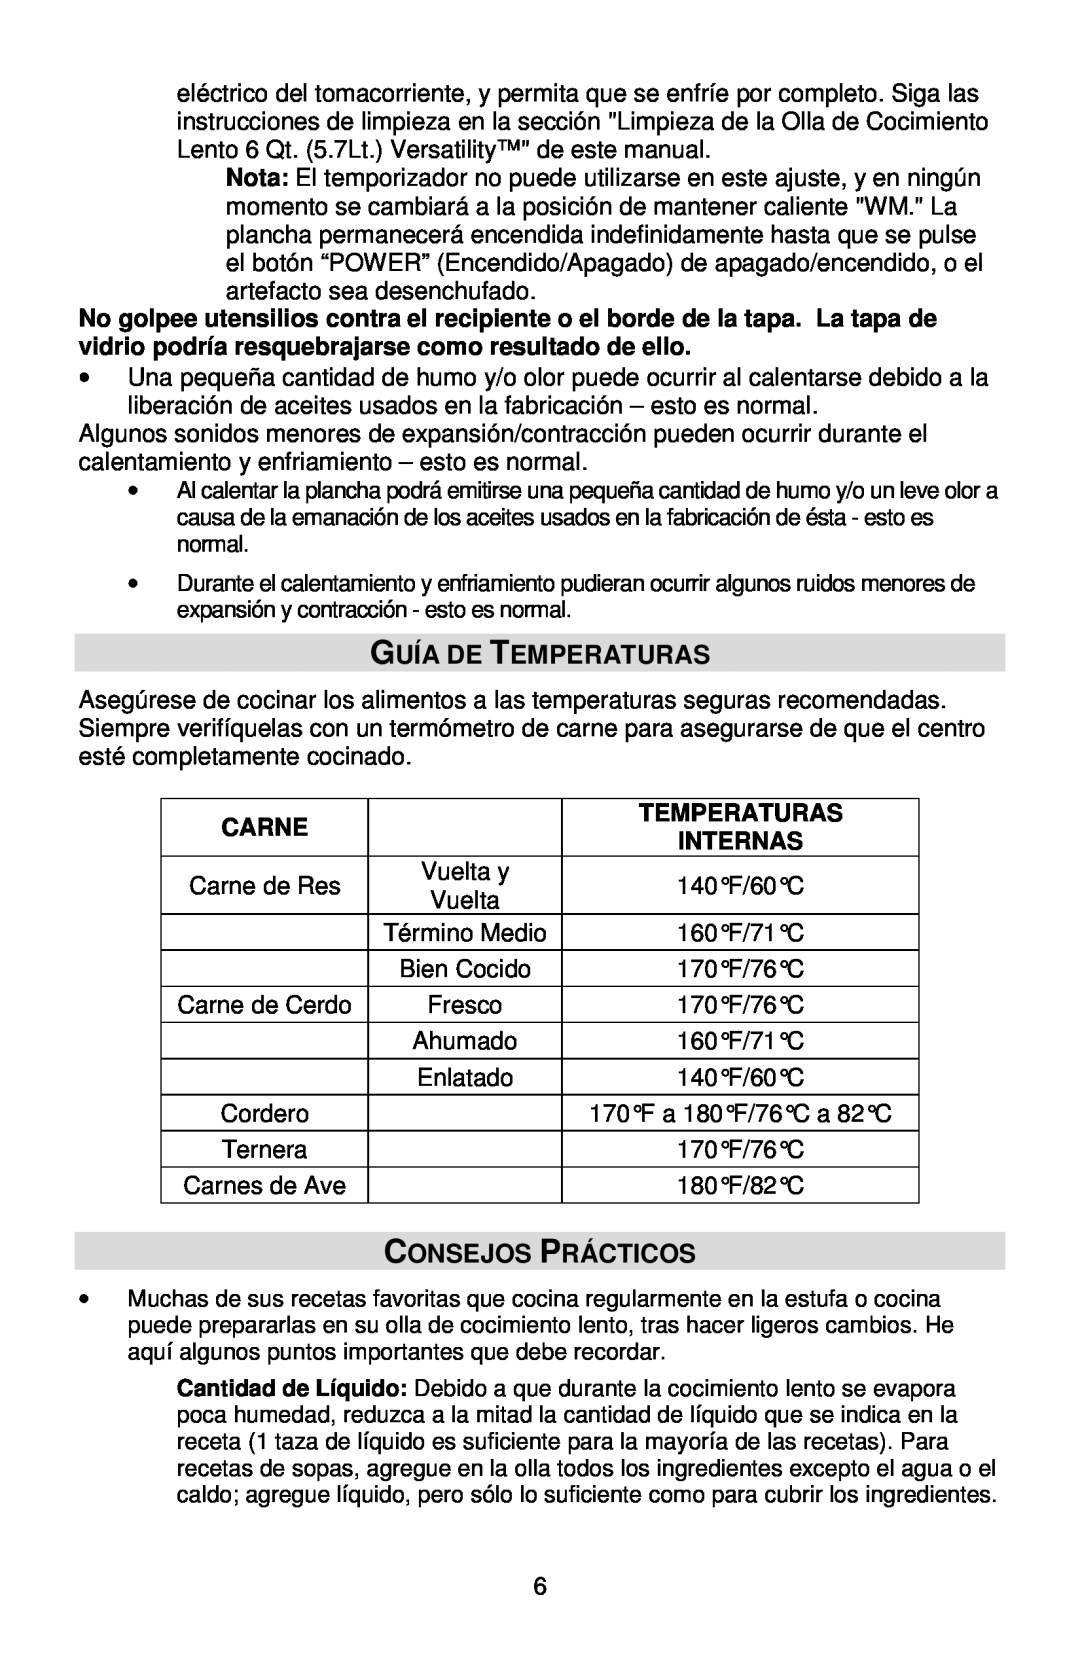 West Bend L5800, 84966 instruction manual Guía De Temperaturas, Consejos Prácticos, Carne, Internas 